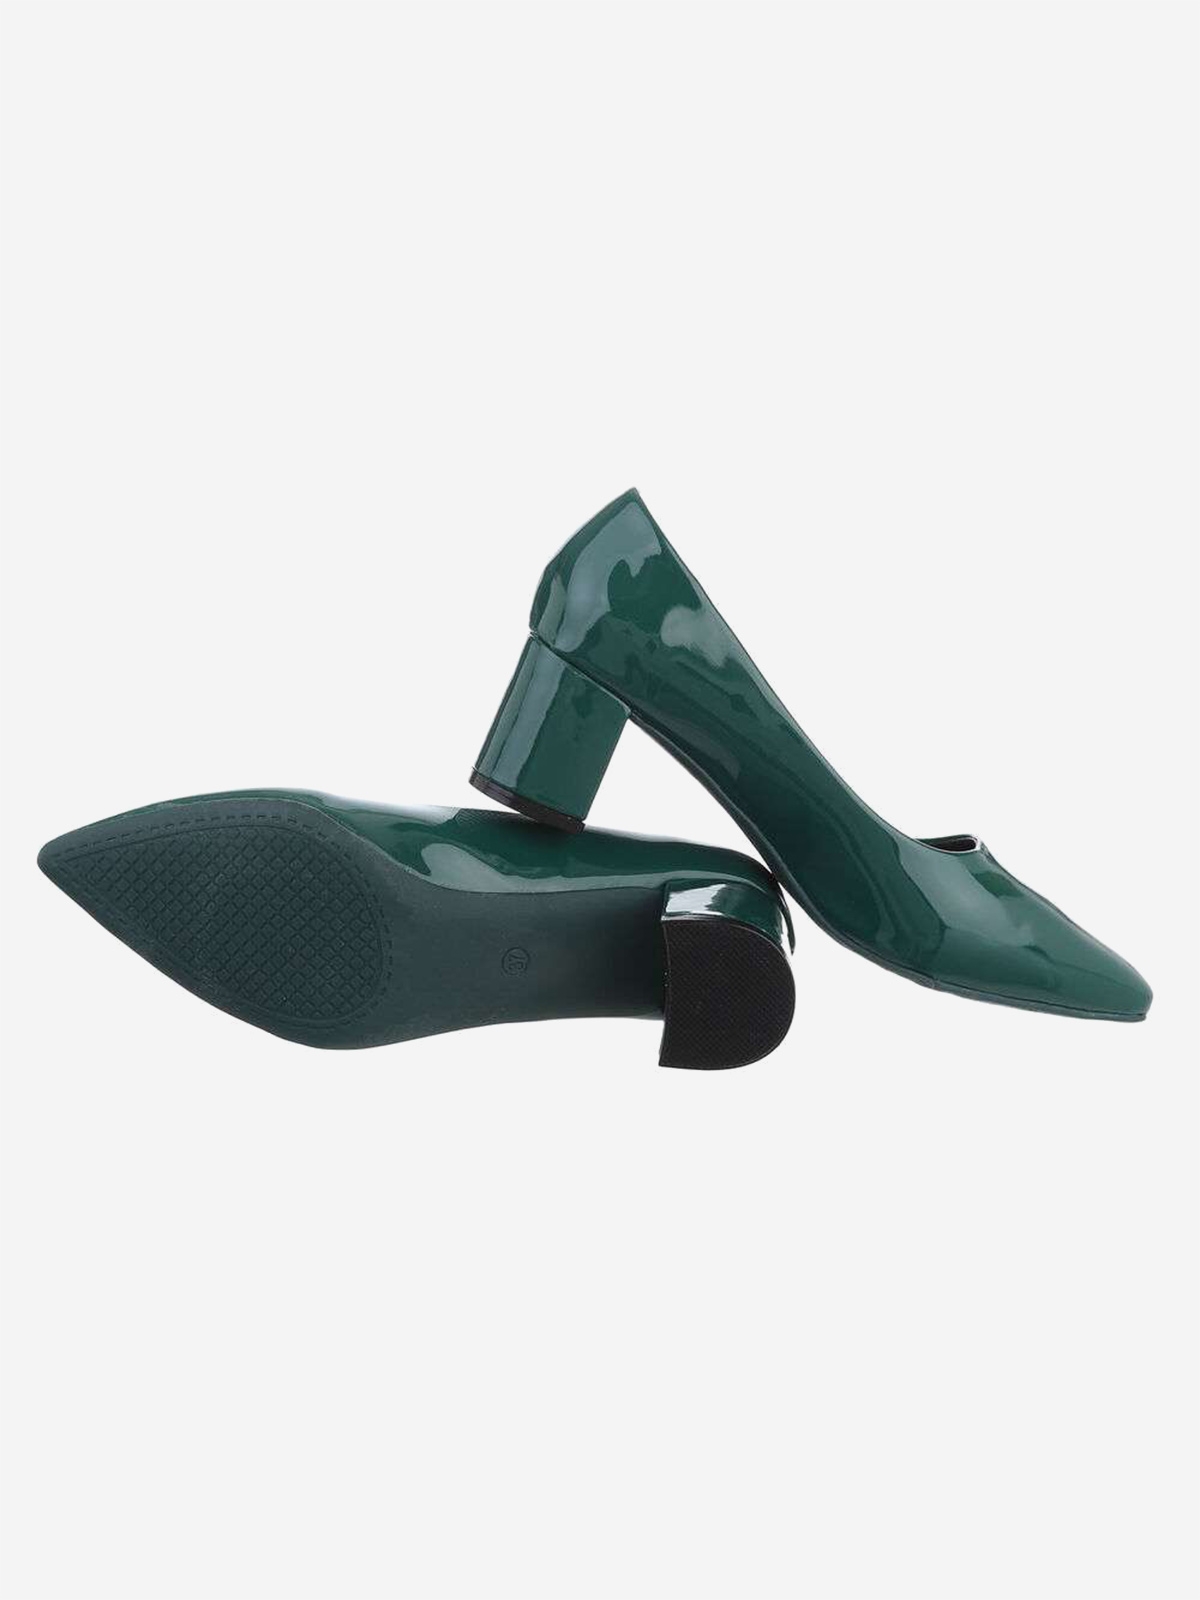 Women's elegant shoes in green